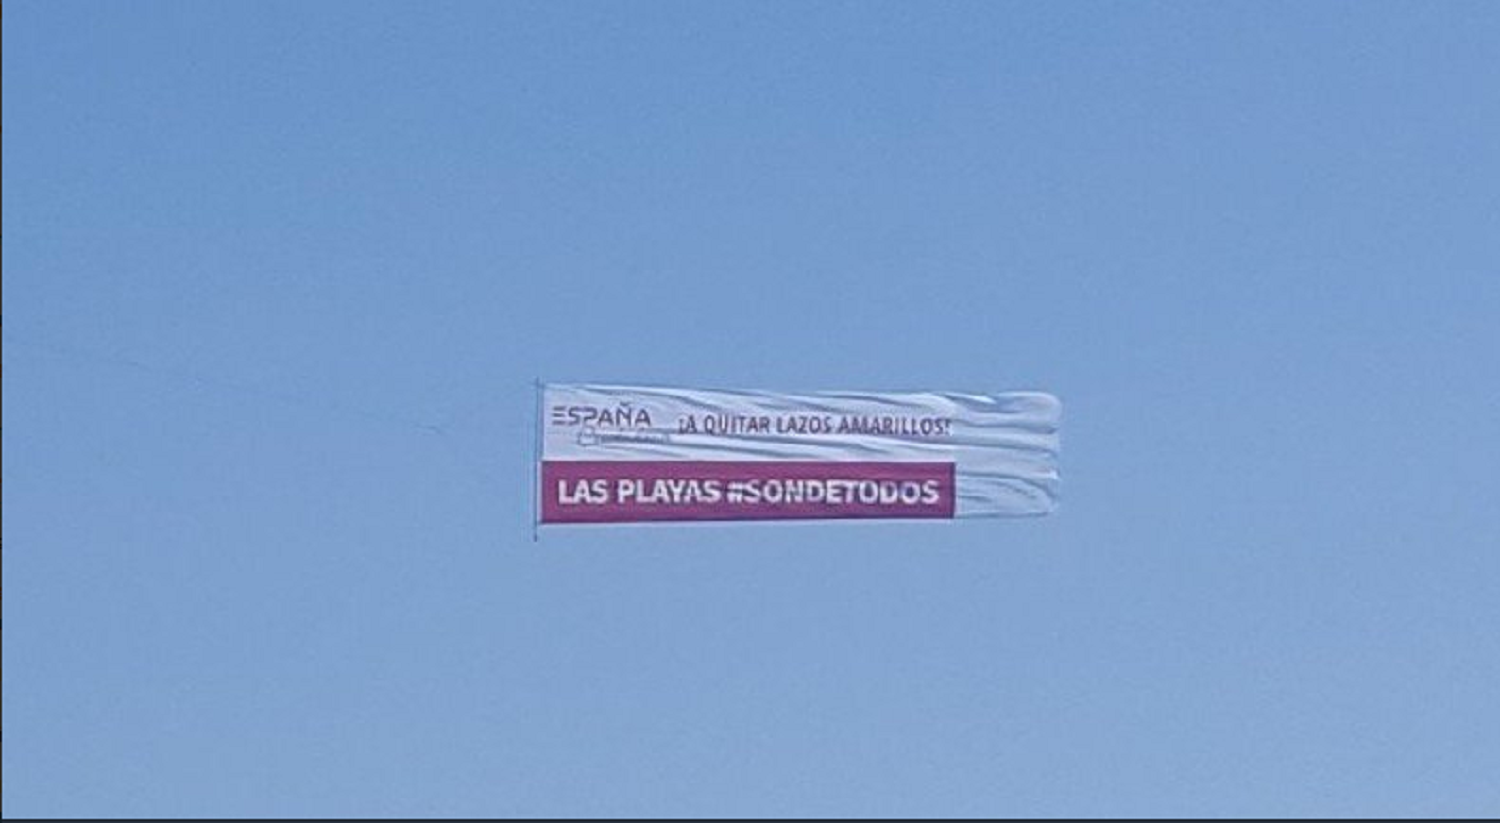 Una avioneta estorba a los bañistas con un mensaje españolista